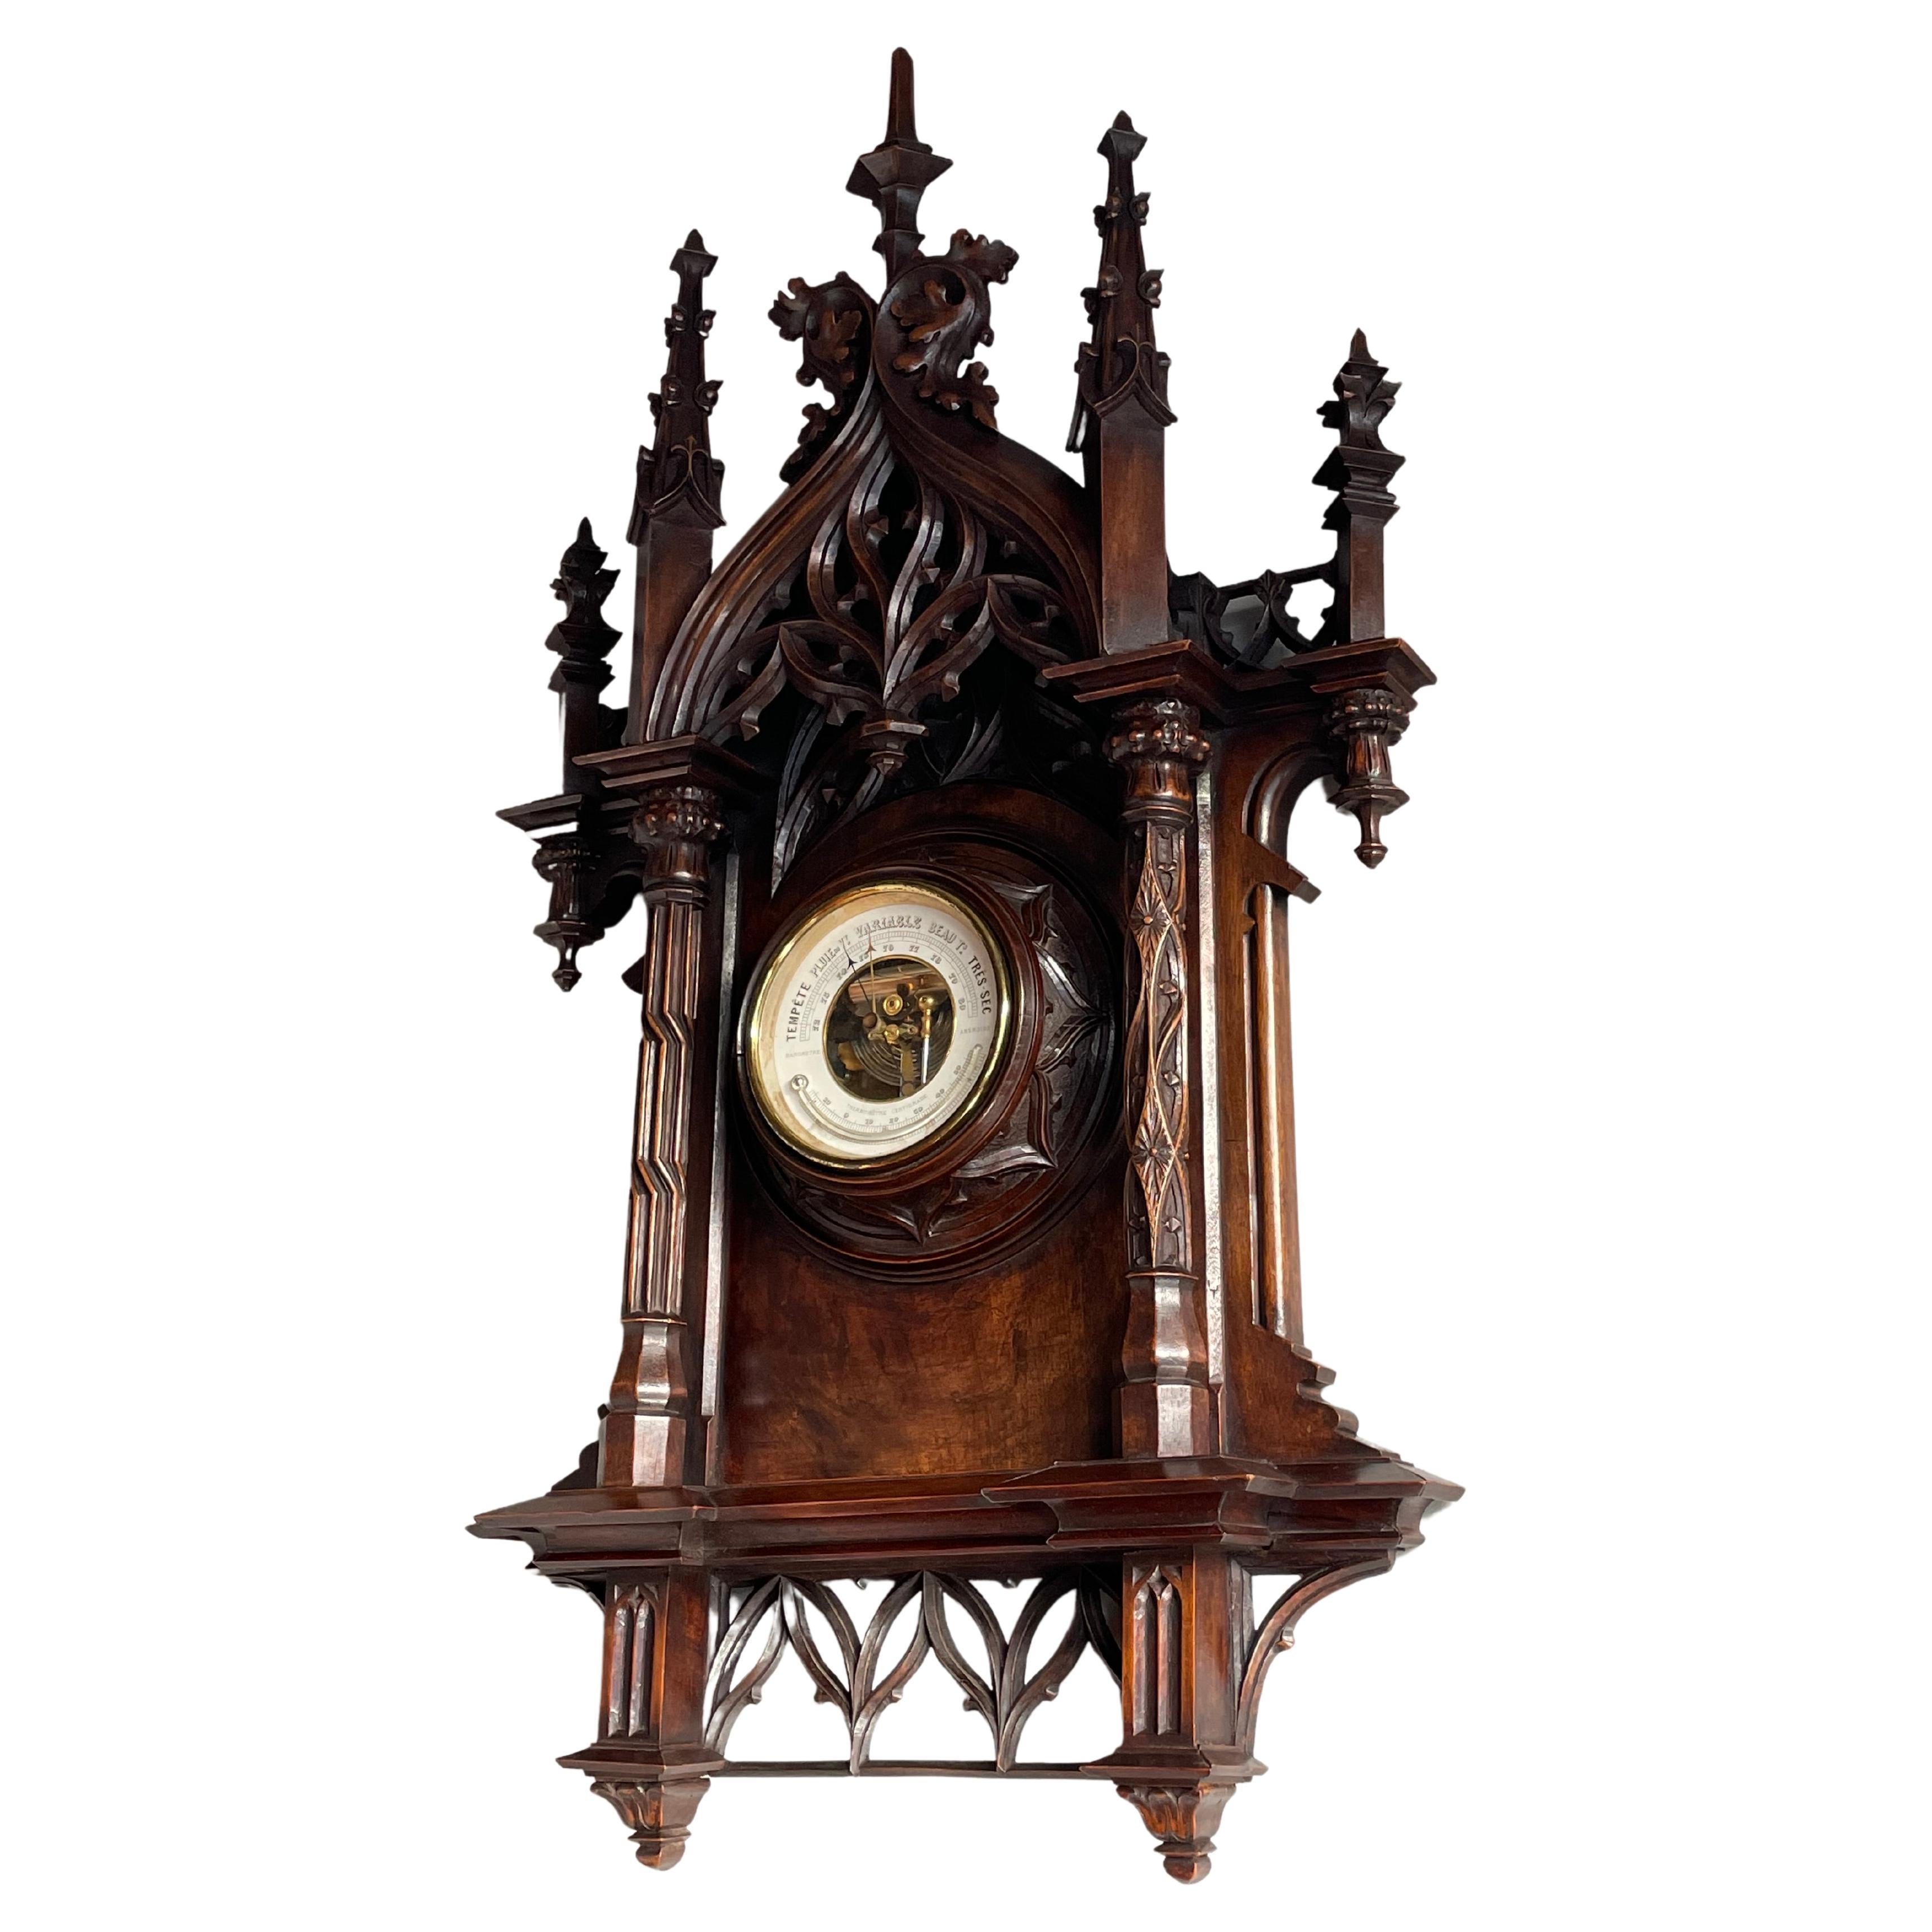 Größtes antikes & hochwertiges handgeschnitztes Barometer & Thermometer der Gotik-Revival-Zeit